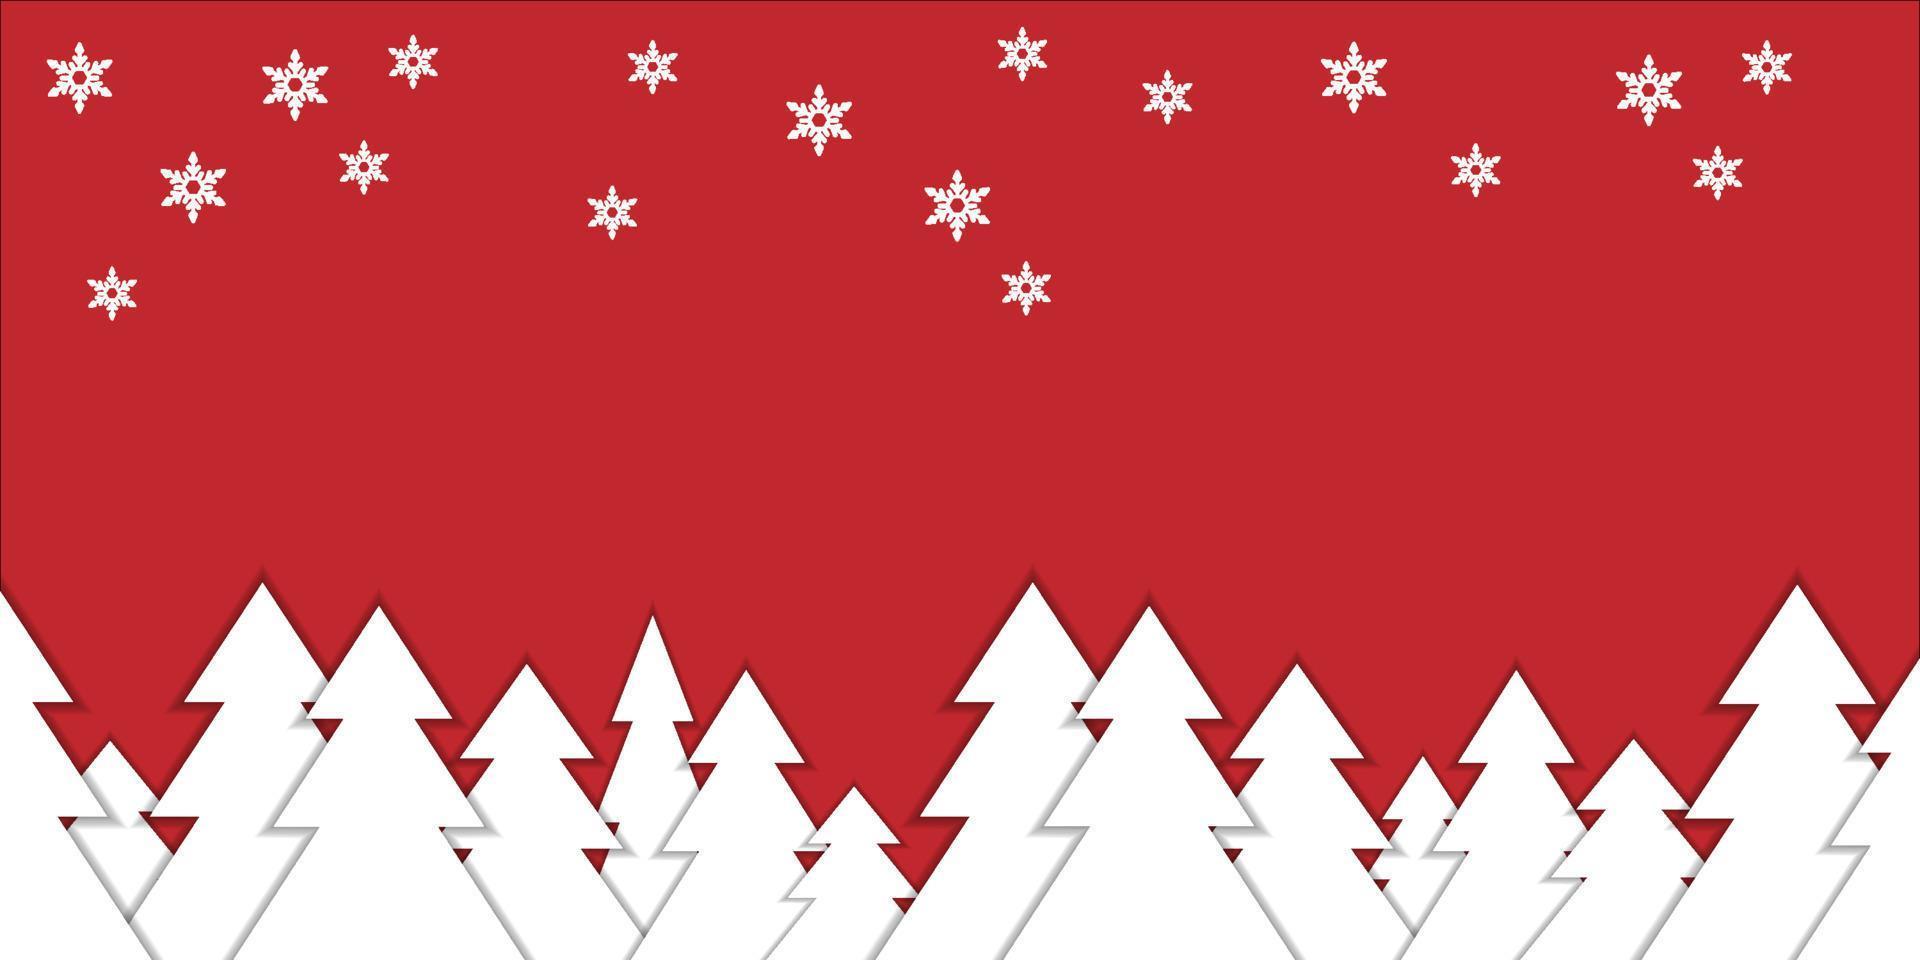 Natale inverno neve futuristico modello rosso sfondo celebrazione stagione vacanza involucro carta , saluto carta, striscione, poster.natale e nuovo anno background.celebrate festa vettore